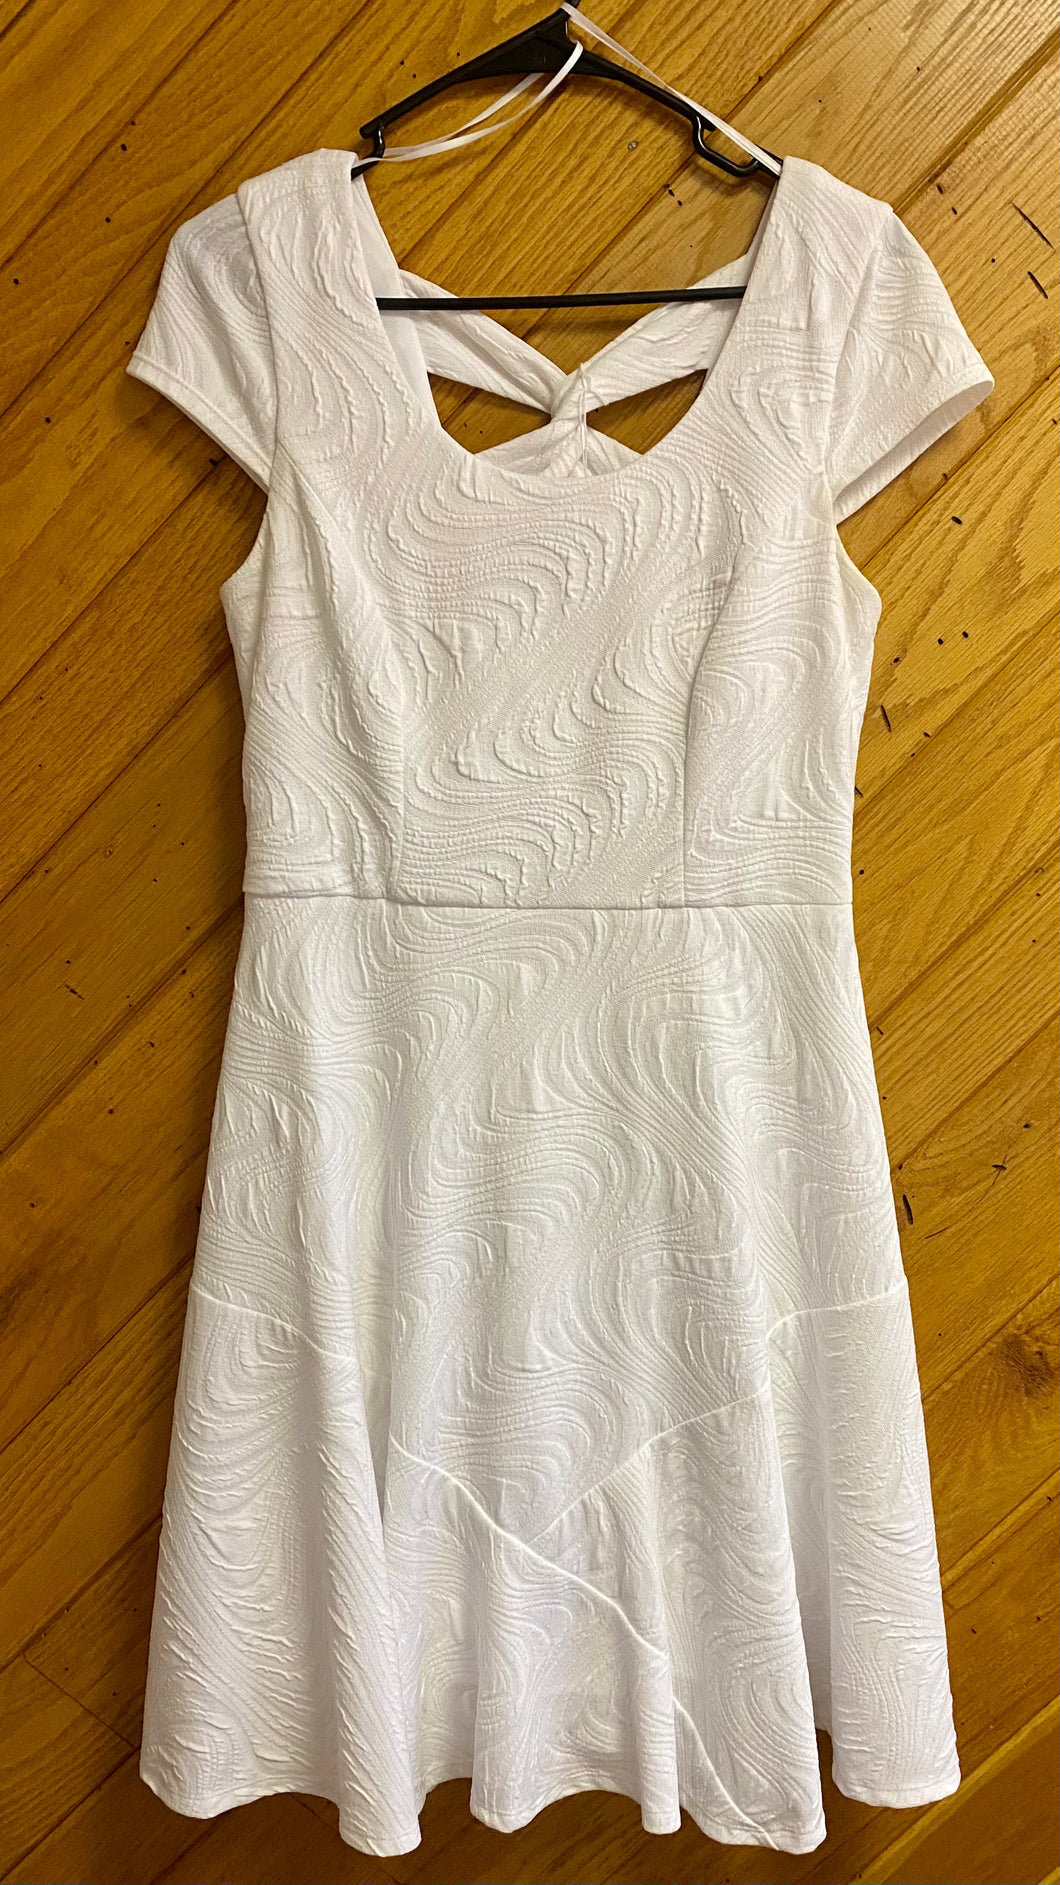 HANN200-B Casual White Dress. Size 6